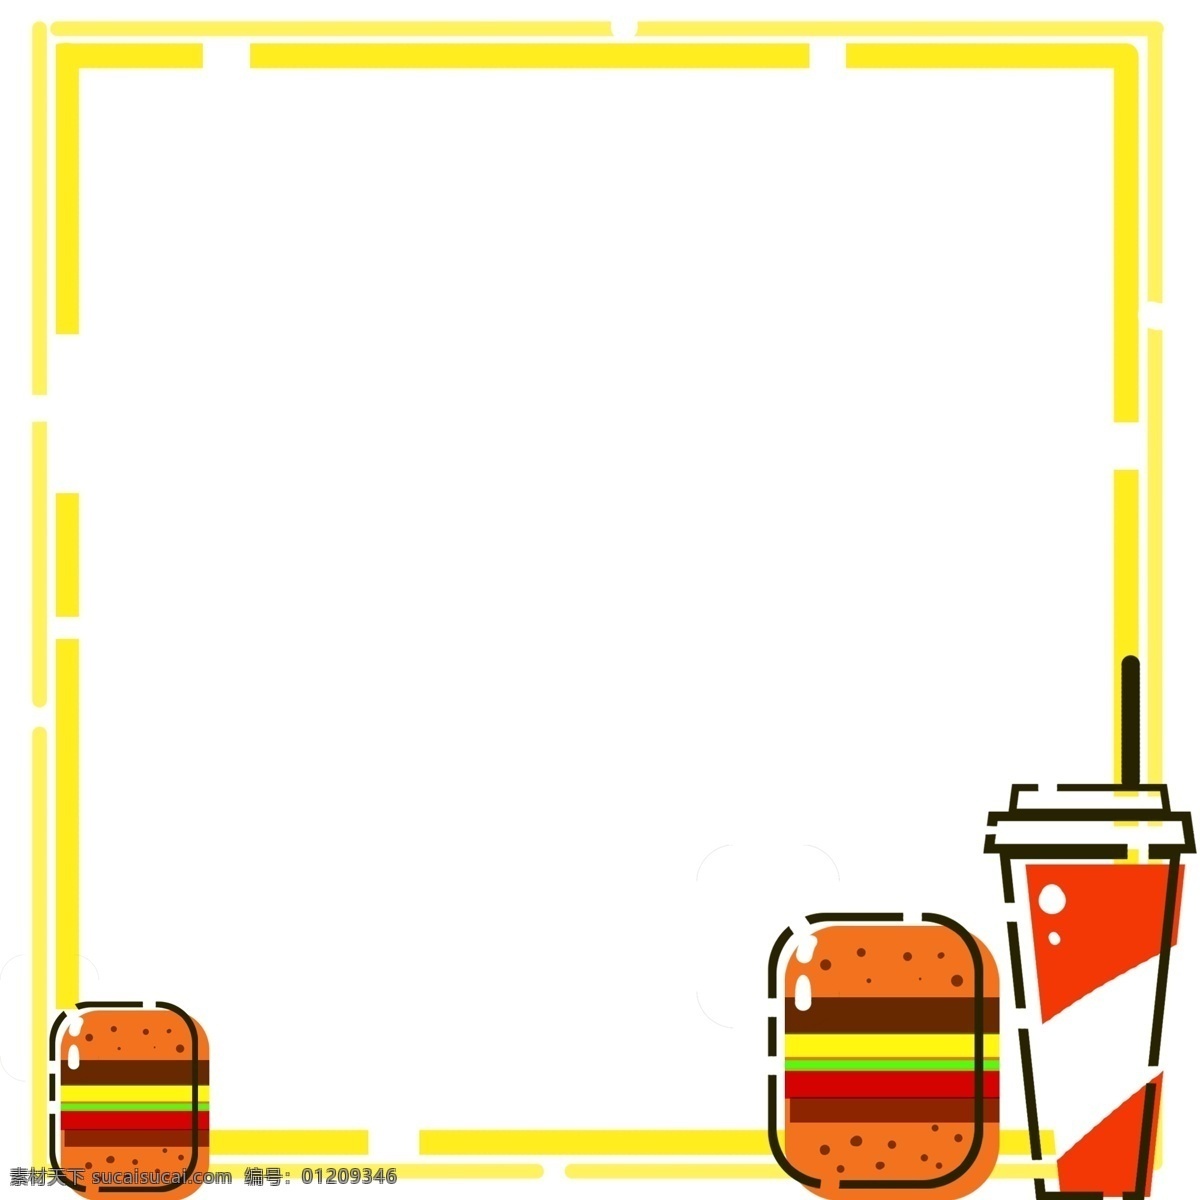 手绘 汉堡 mbe 边框 插画 黄色边框 插图 汉堡边框 可乐边框 边框插画 mbe边框